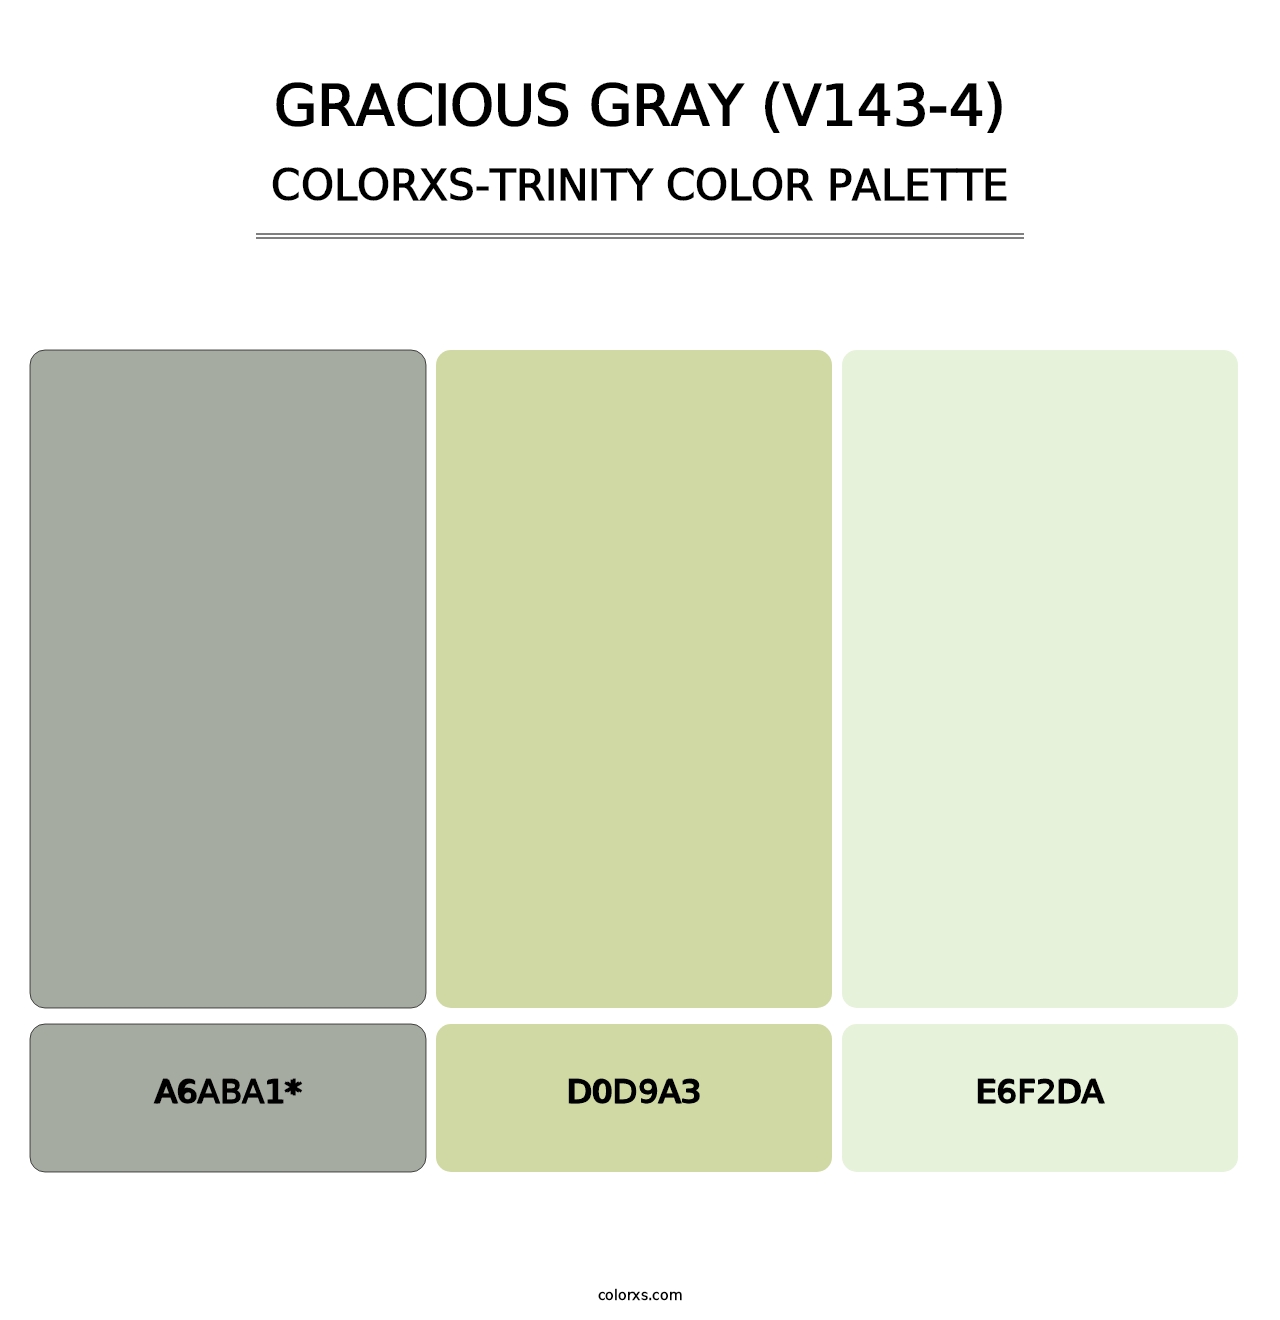 Gracious Gray (V143-4) - Colorxs Trinity Palette